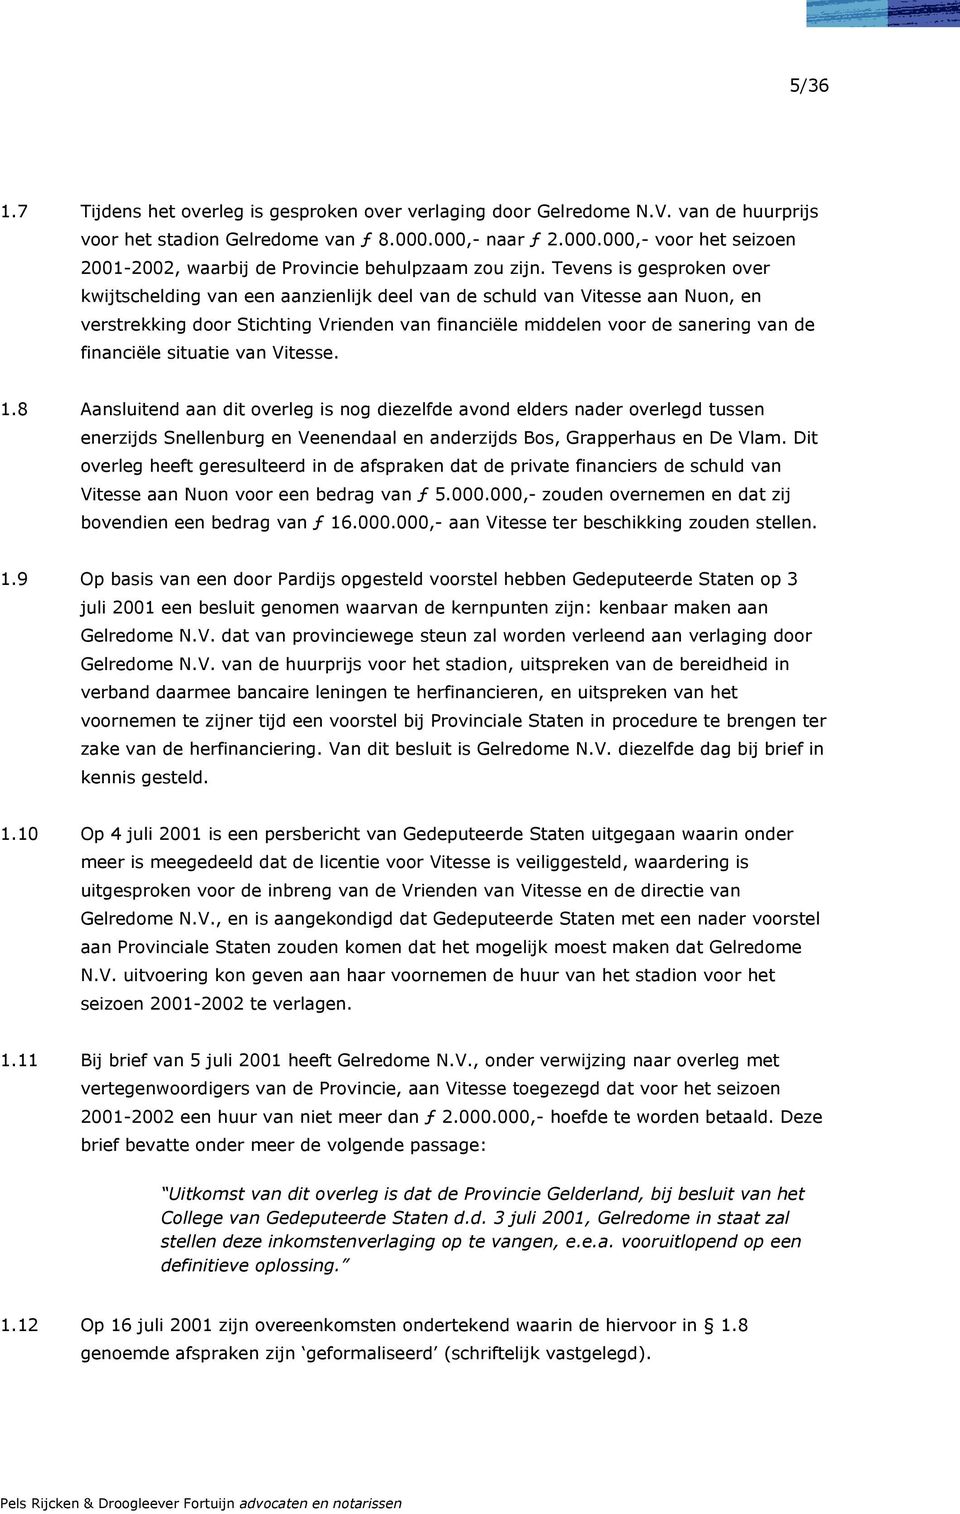 Tevens is gesproken over kwijtschelding van een aanzienlijk deel van de schuld van Vitesse aan Nuon, en verstrekking door Stichting Vrienden van financiële middelen voor de sanering van de financiële